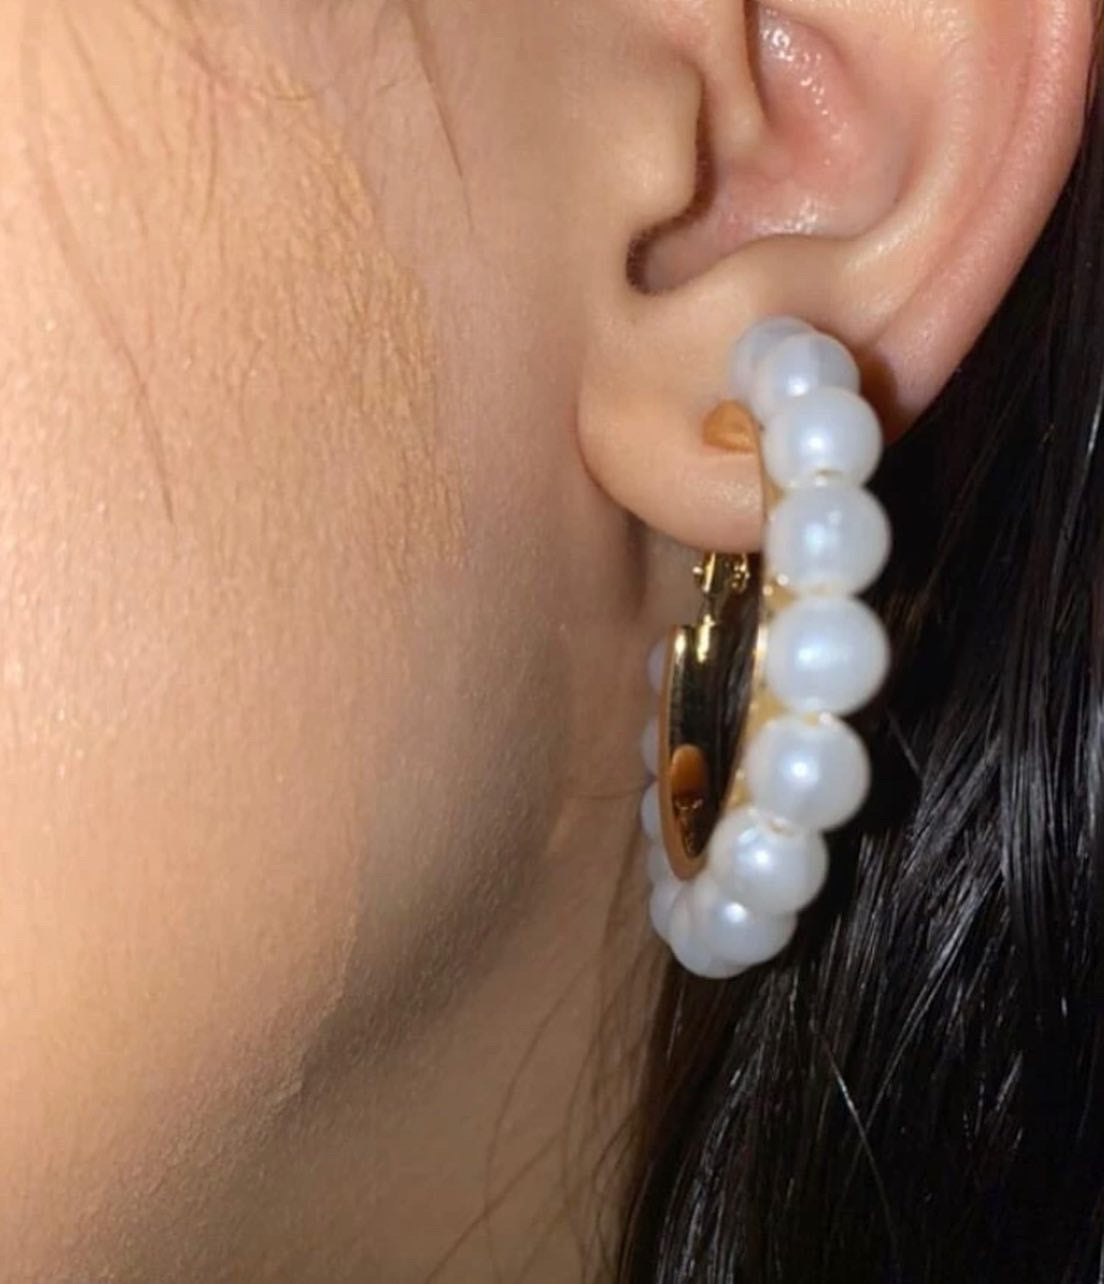 Large cute pearl hoop earrings